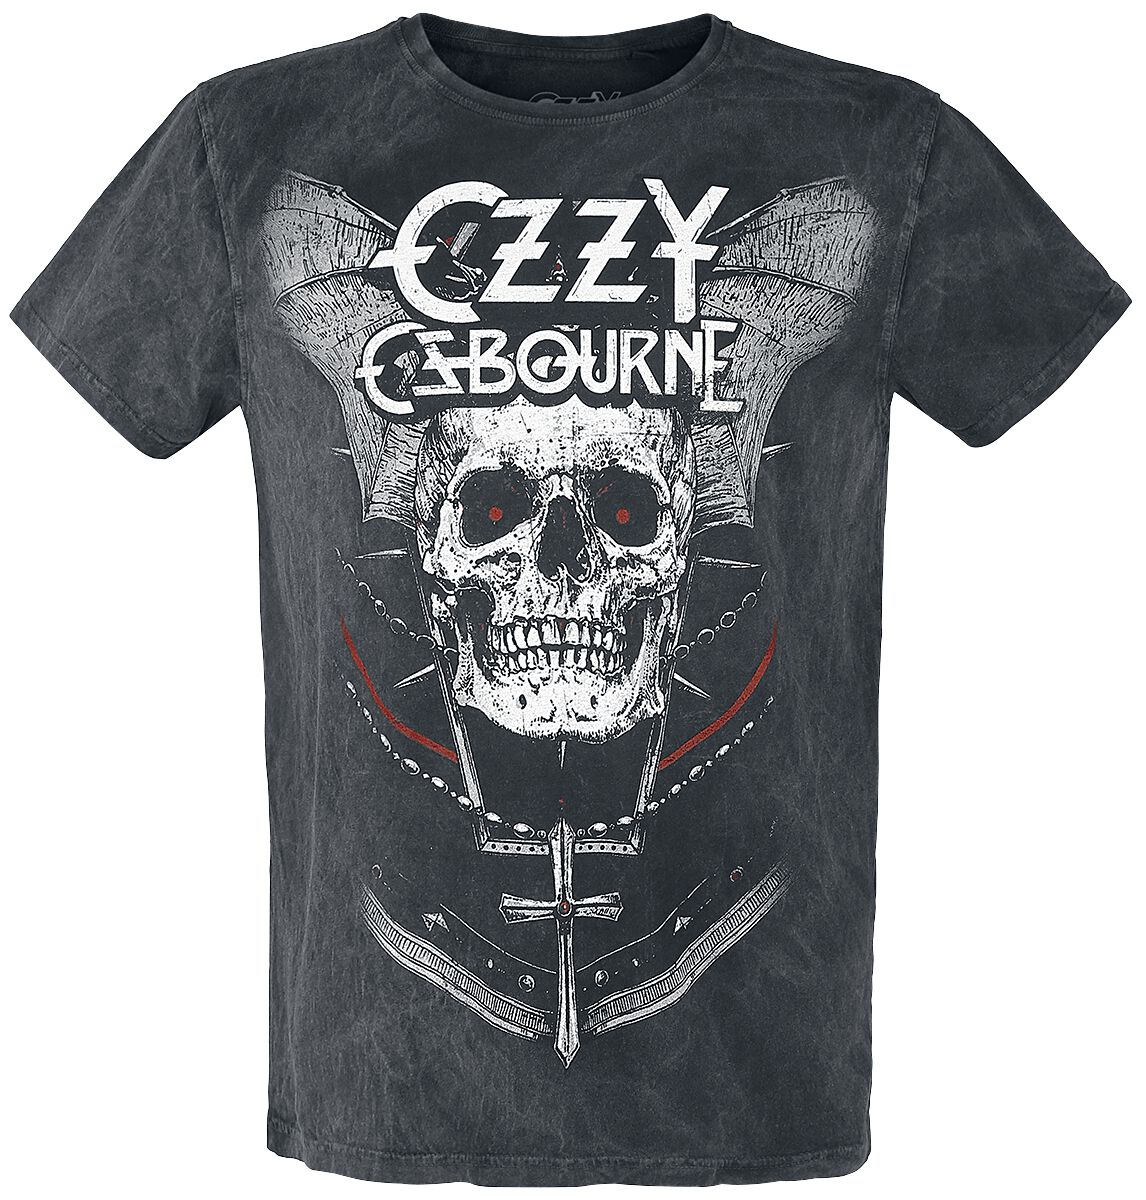 Ozzy Osbourne T-Shirt - White Logo - S bis XXL - für Männer - Größe S - charcoal  - Lizenziertes Merchandise!